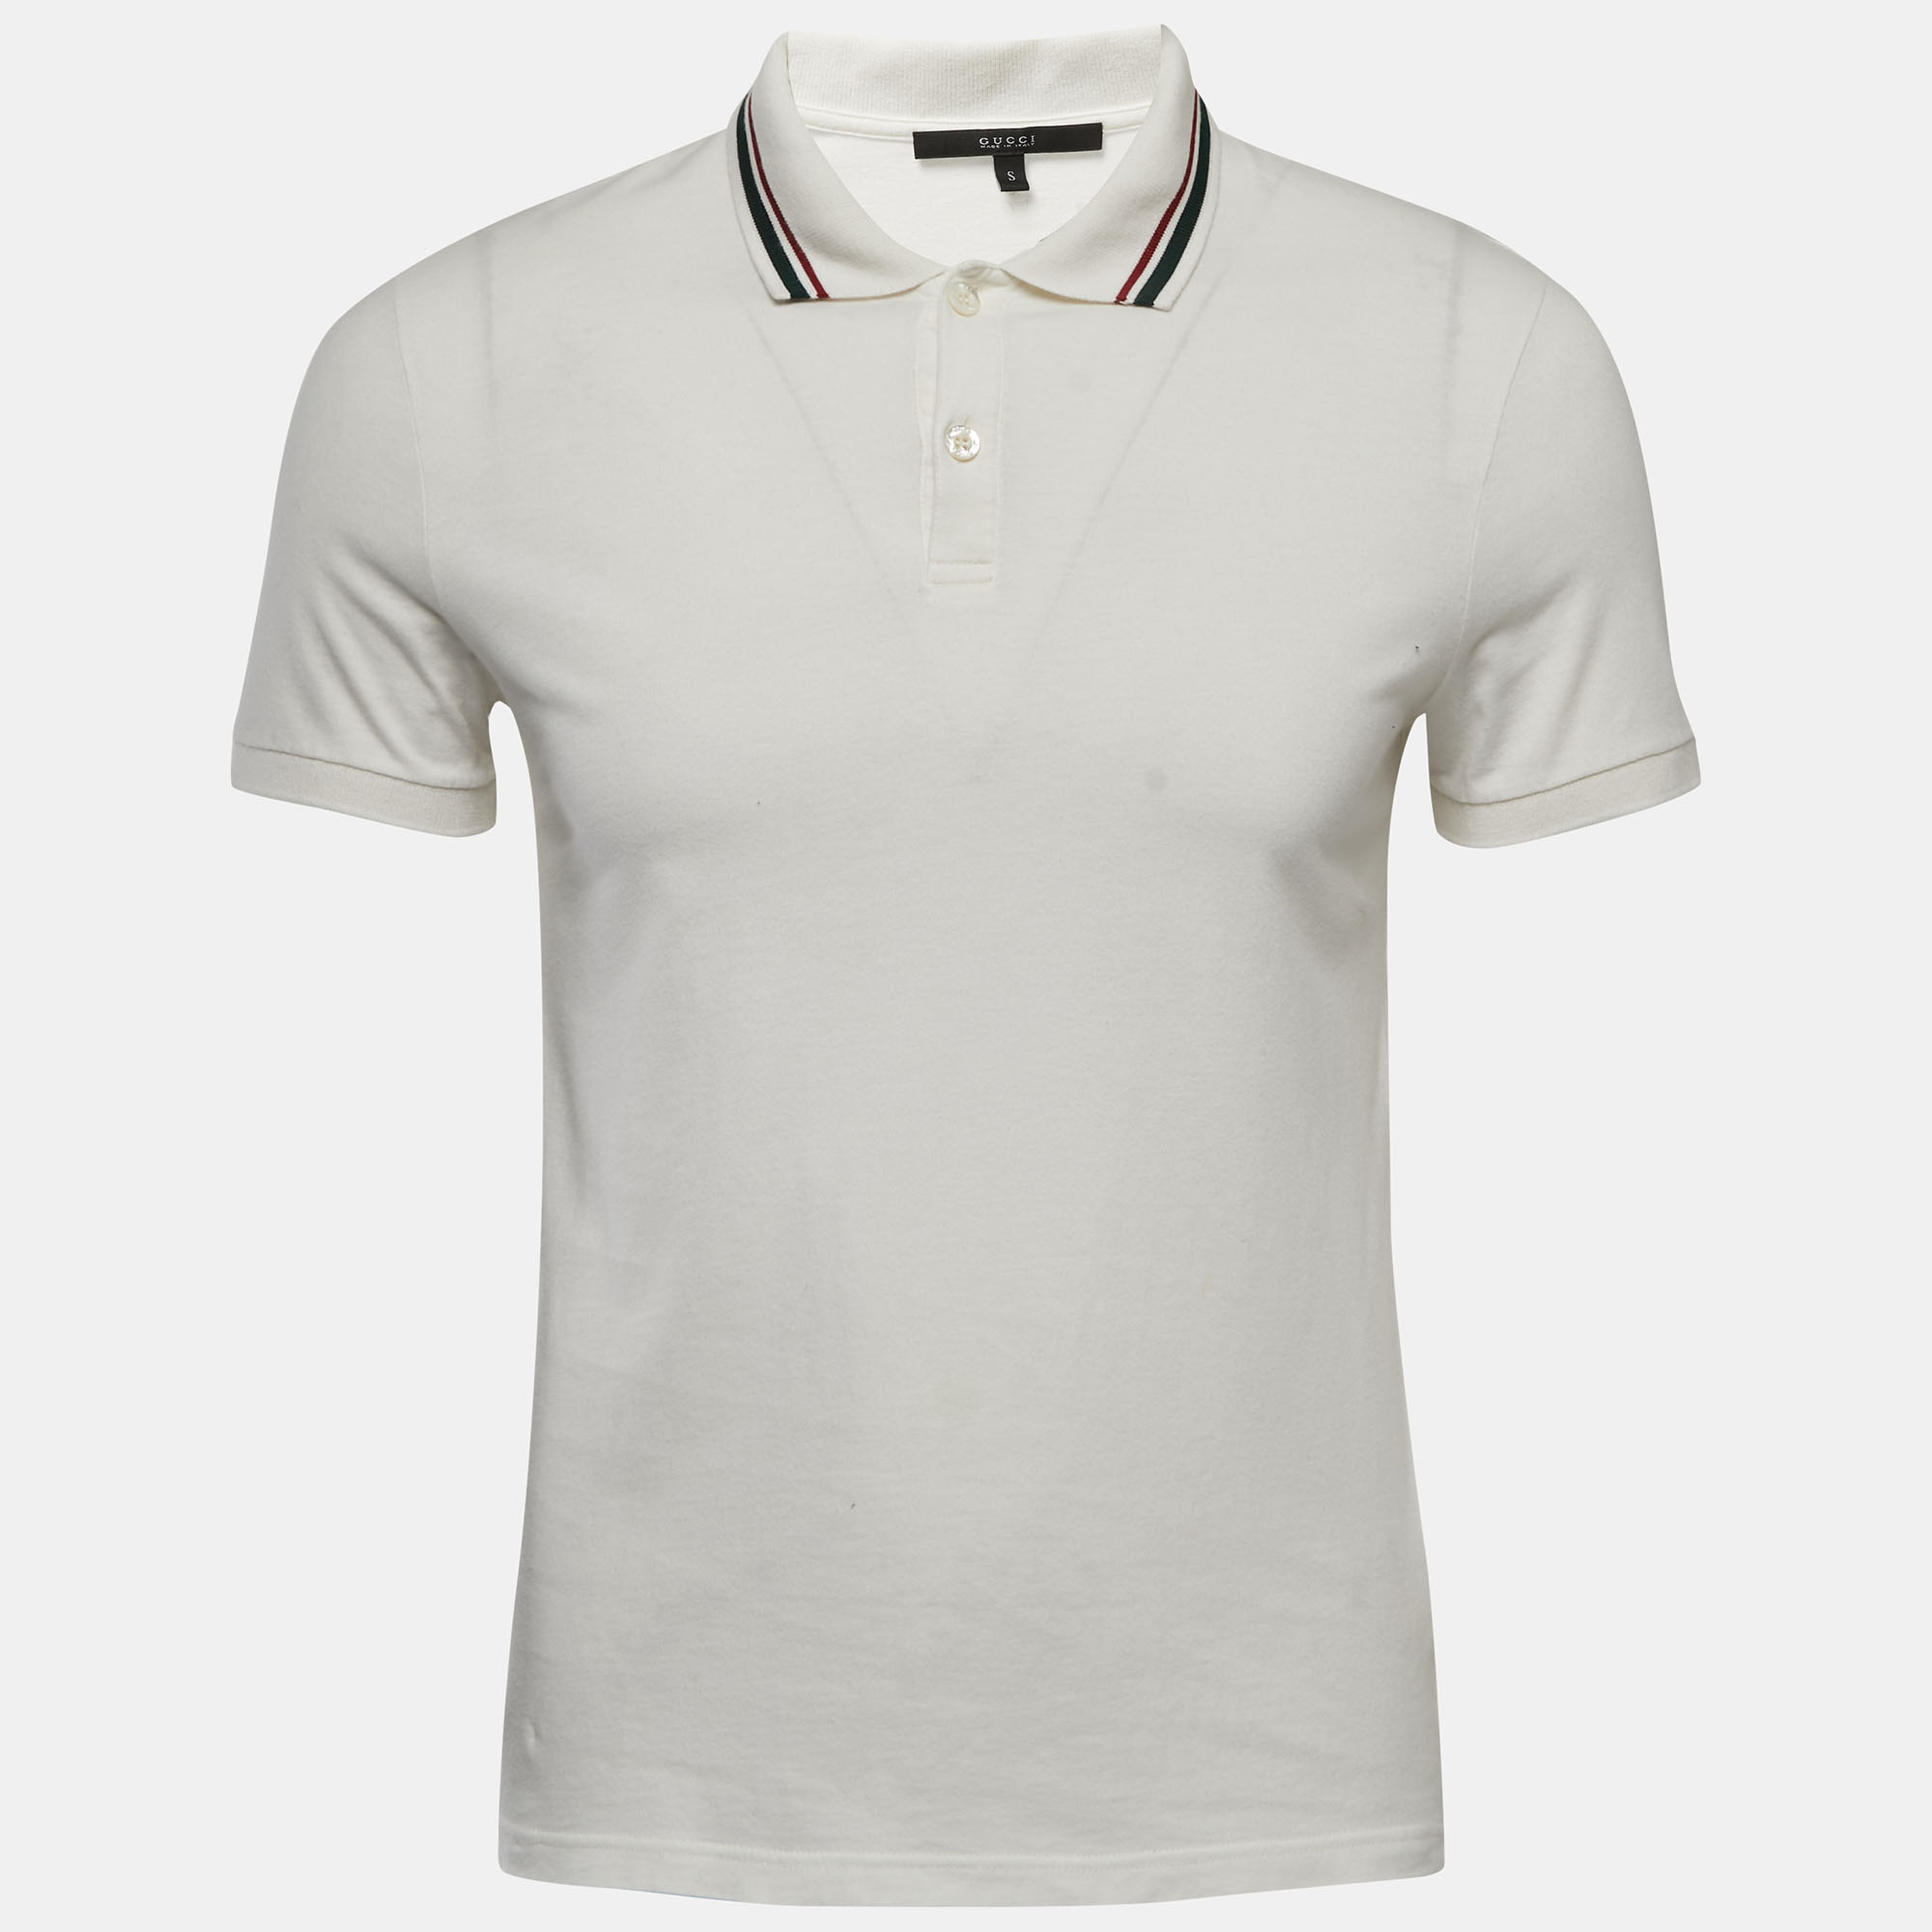 Gucci White Cotton Web Stripe Detailed Polo T-Shirt S